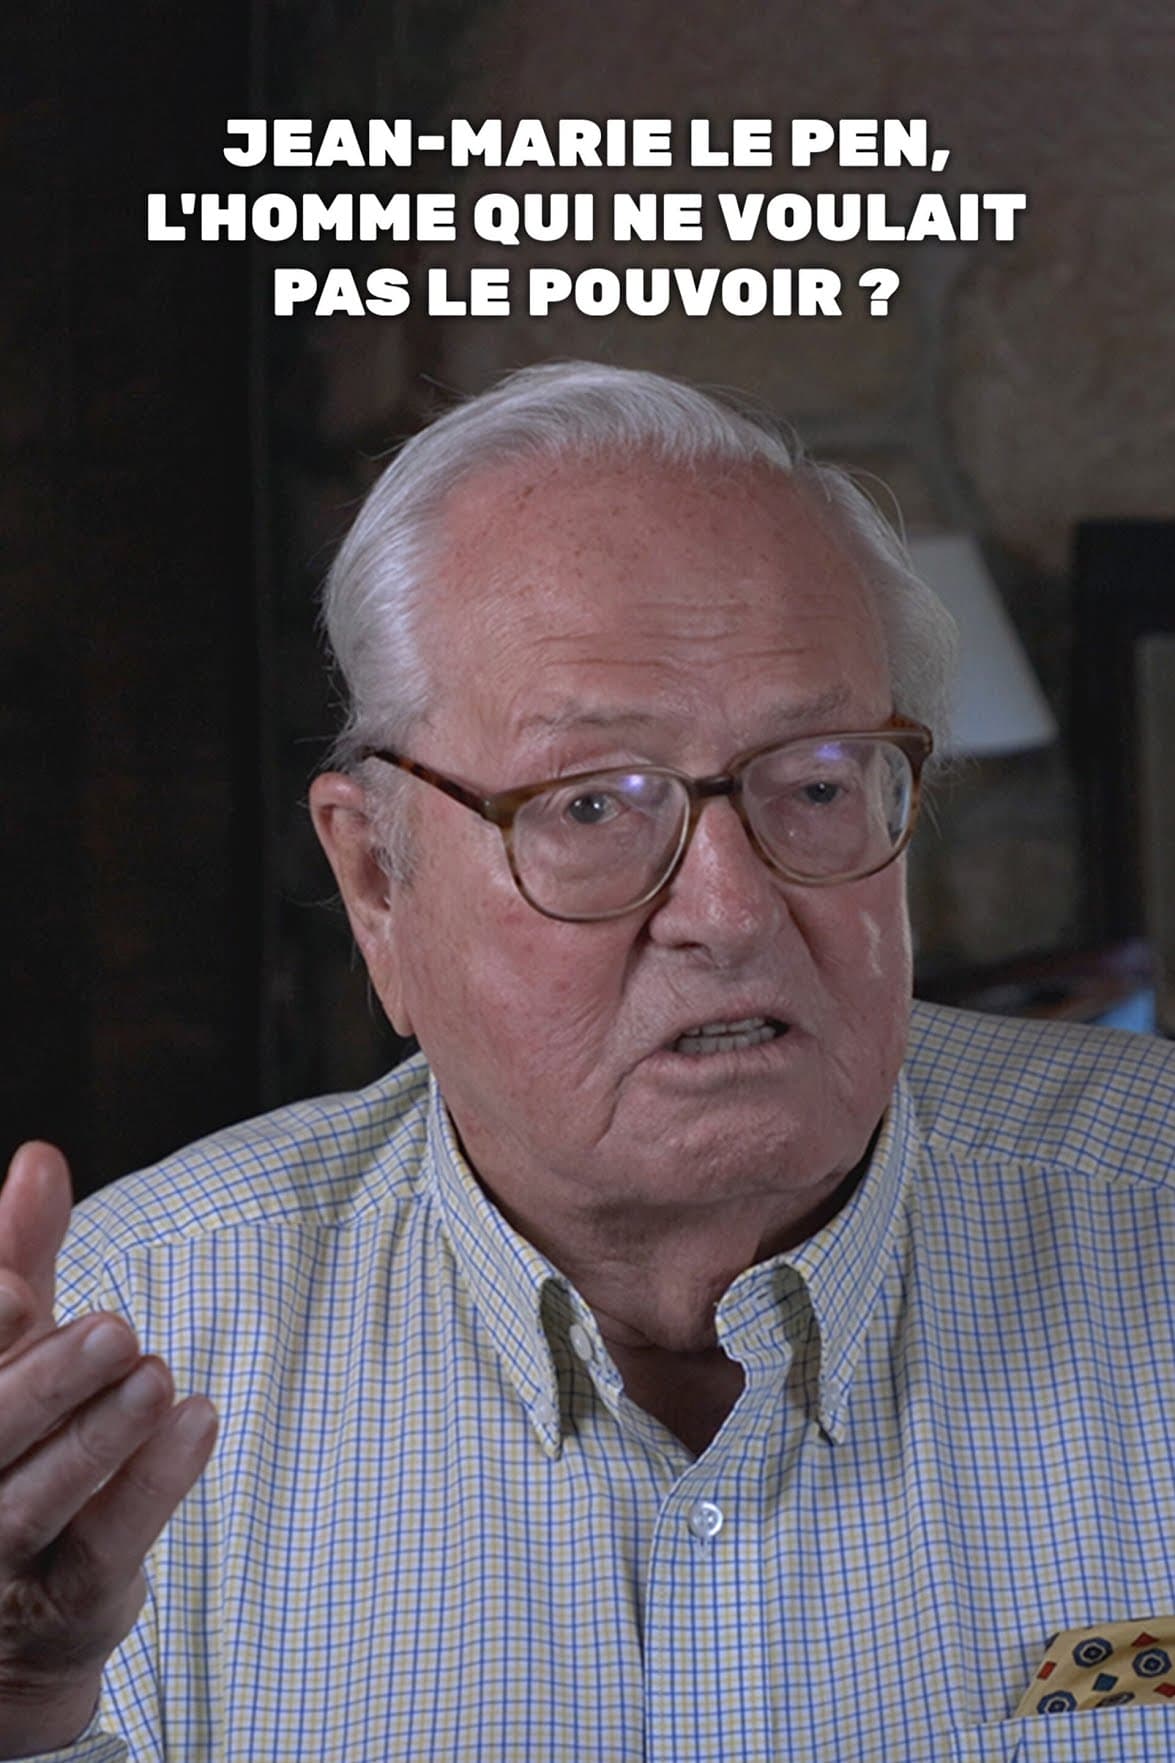 Jean-Marie Le Pen, l'homme qui ne voulait pas le pouvoir ?